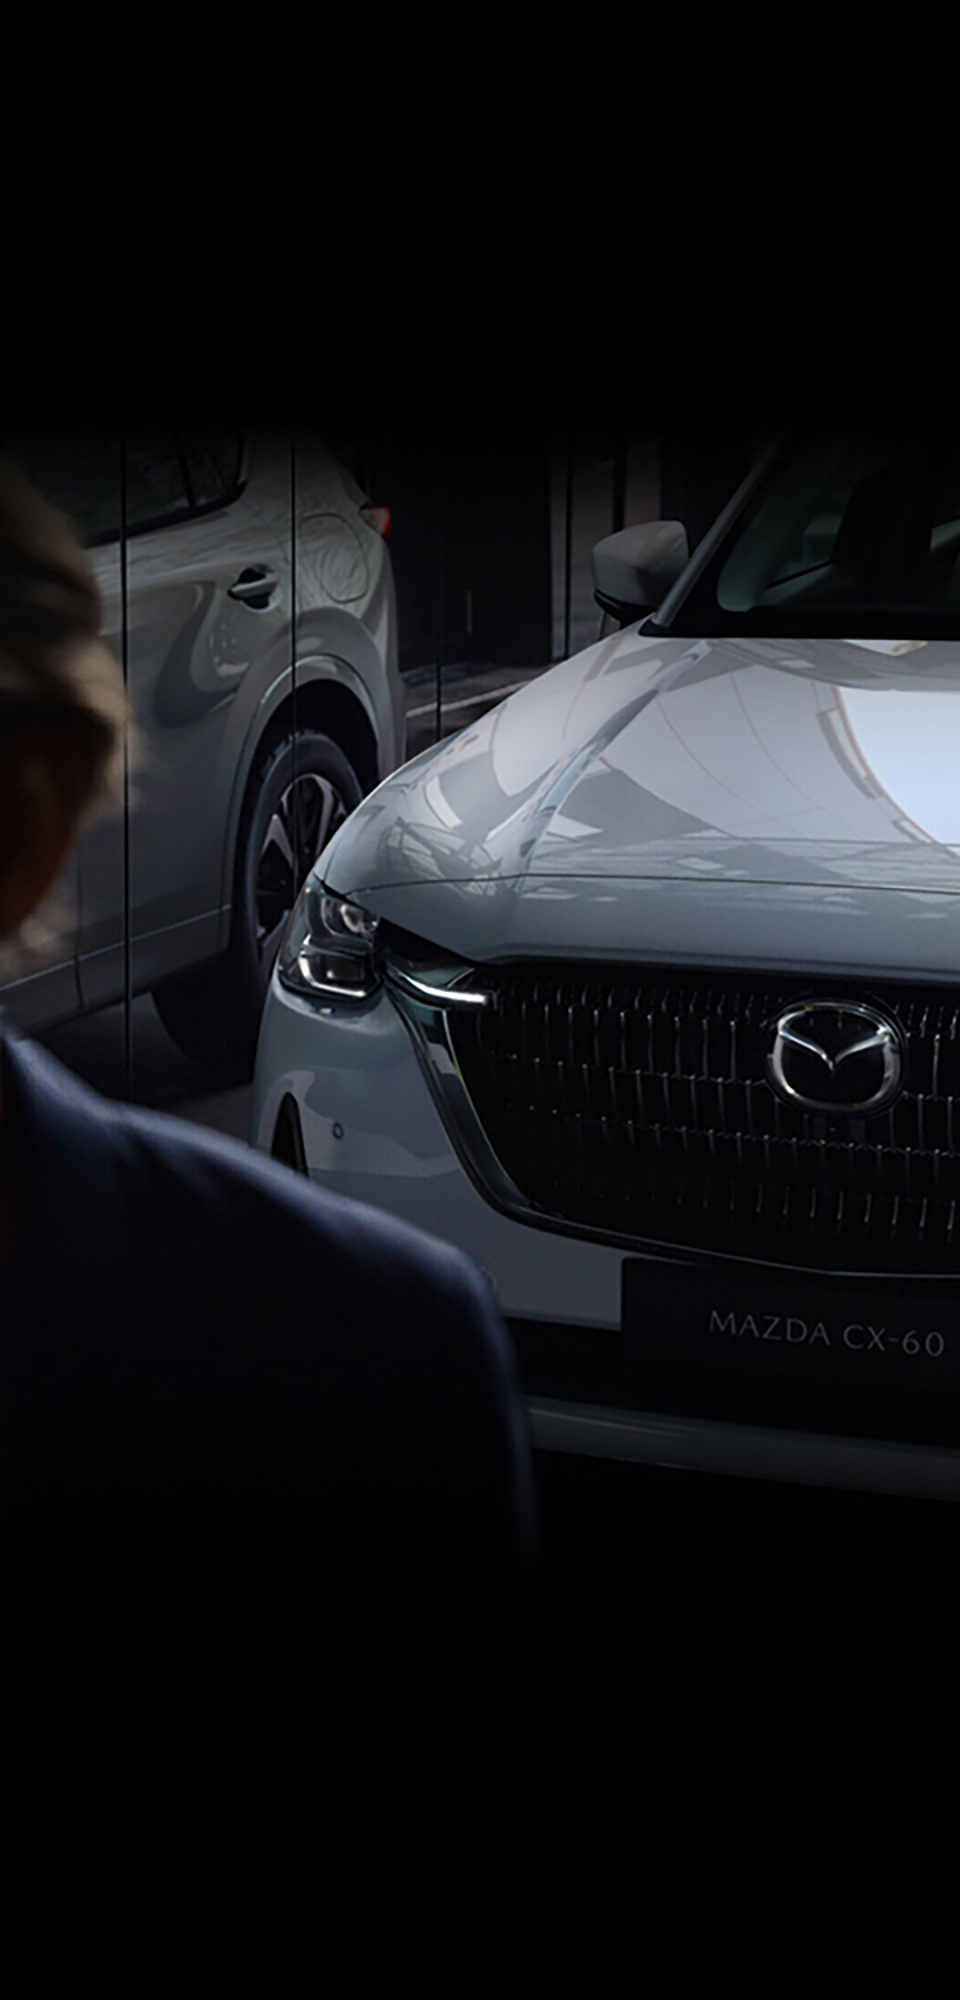 Klaasaknas peegelduv uus pistikhübriid-linnamaastur Mazda CX-60 eestpoolt vaadatuna.